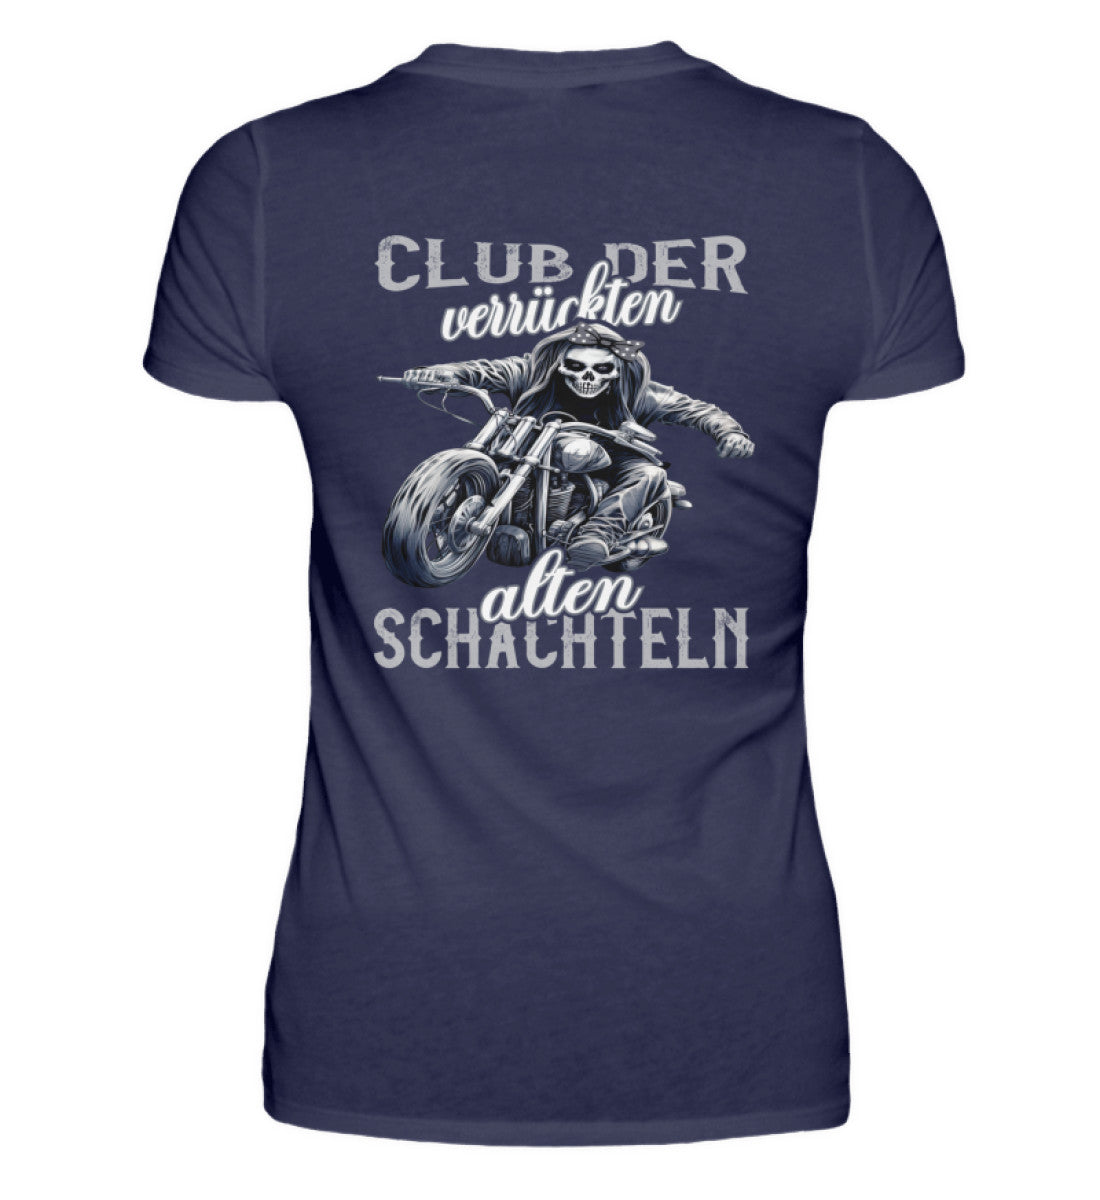 Ein Bikerin T-Shirt für Motorradfahrerinnen von Wingbikers mit dem Aufdruck, Club der verrückten alten Schachteln - mit Back Print, in navy blau.